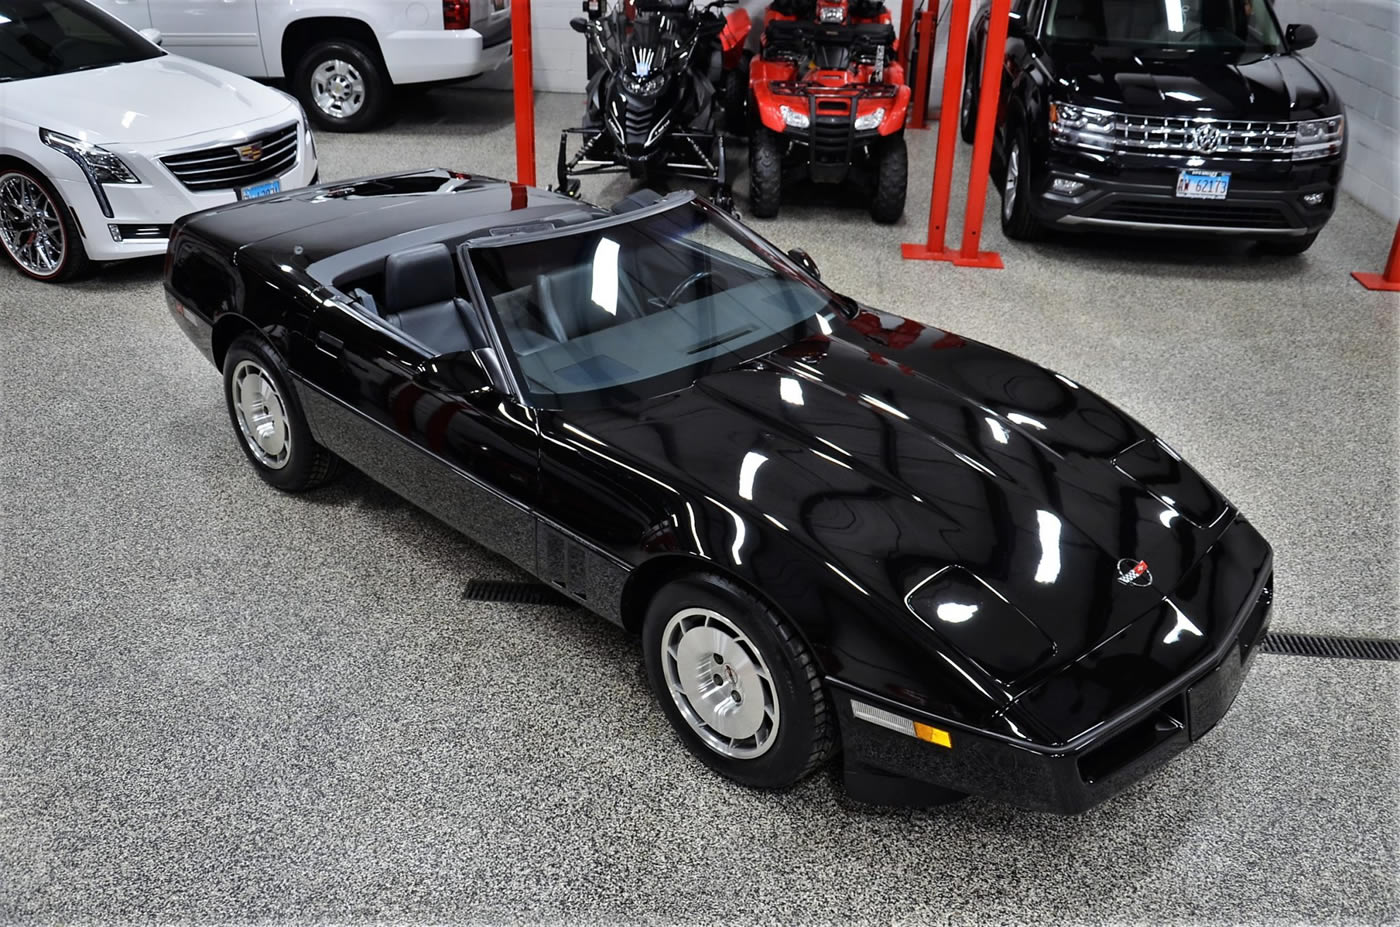 1986 Corvette Convertible in Black